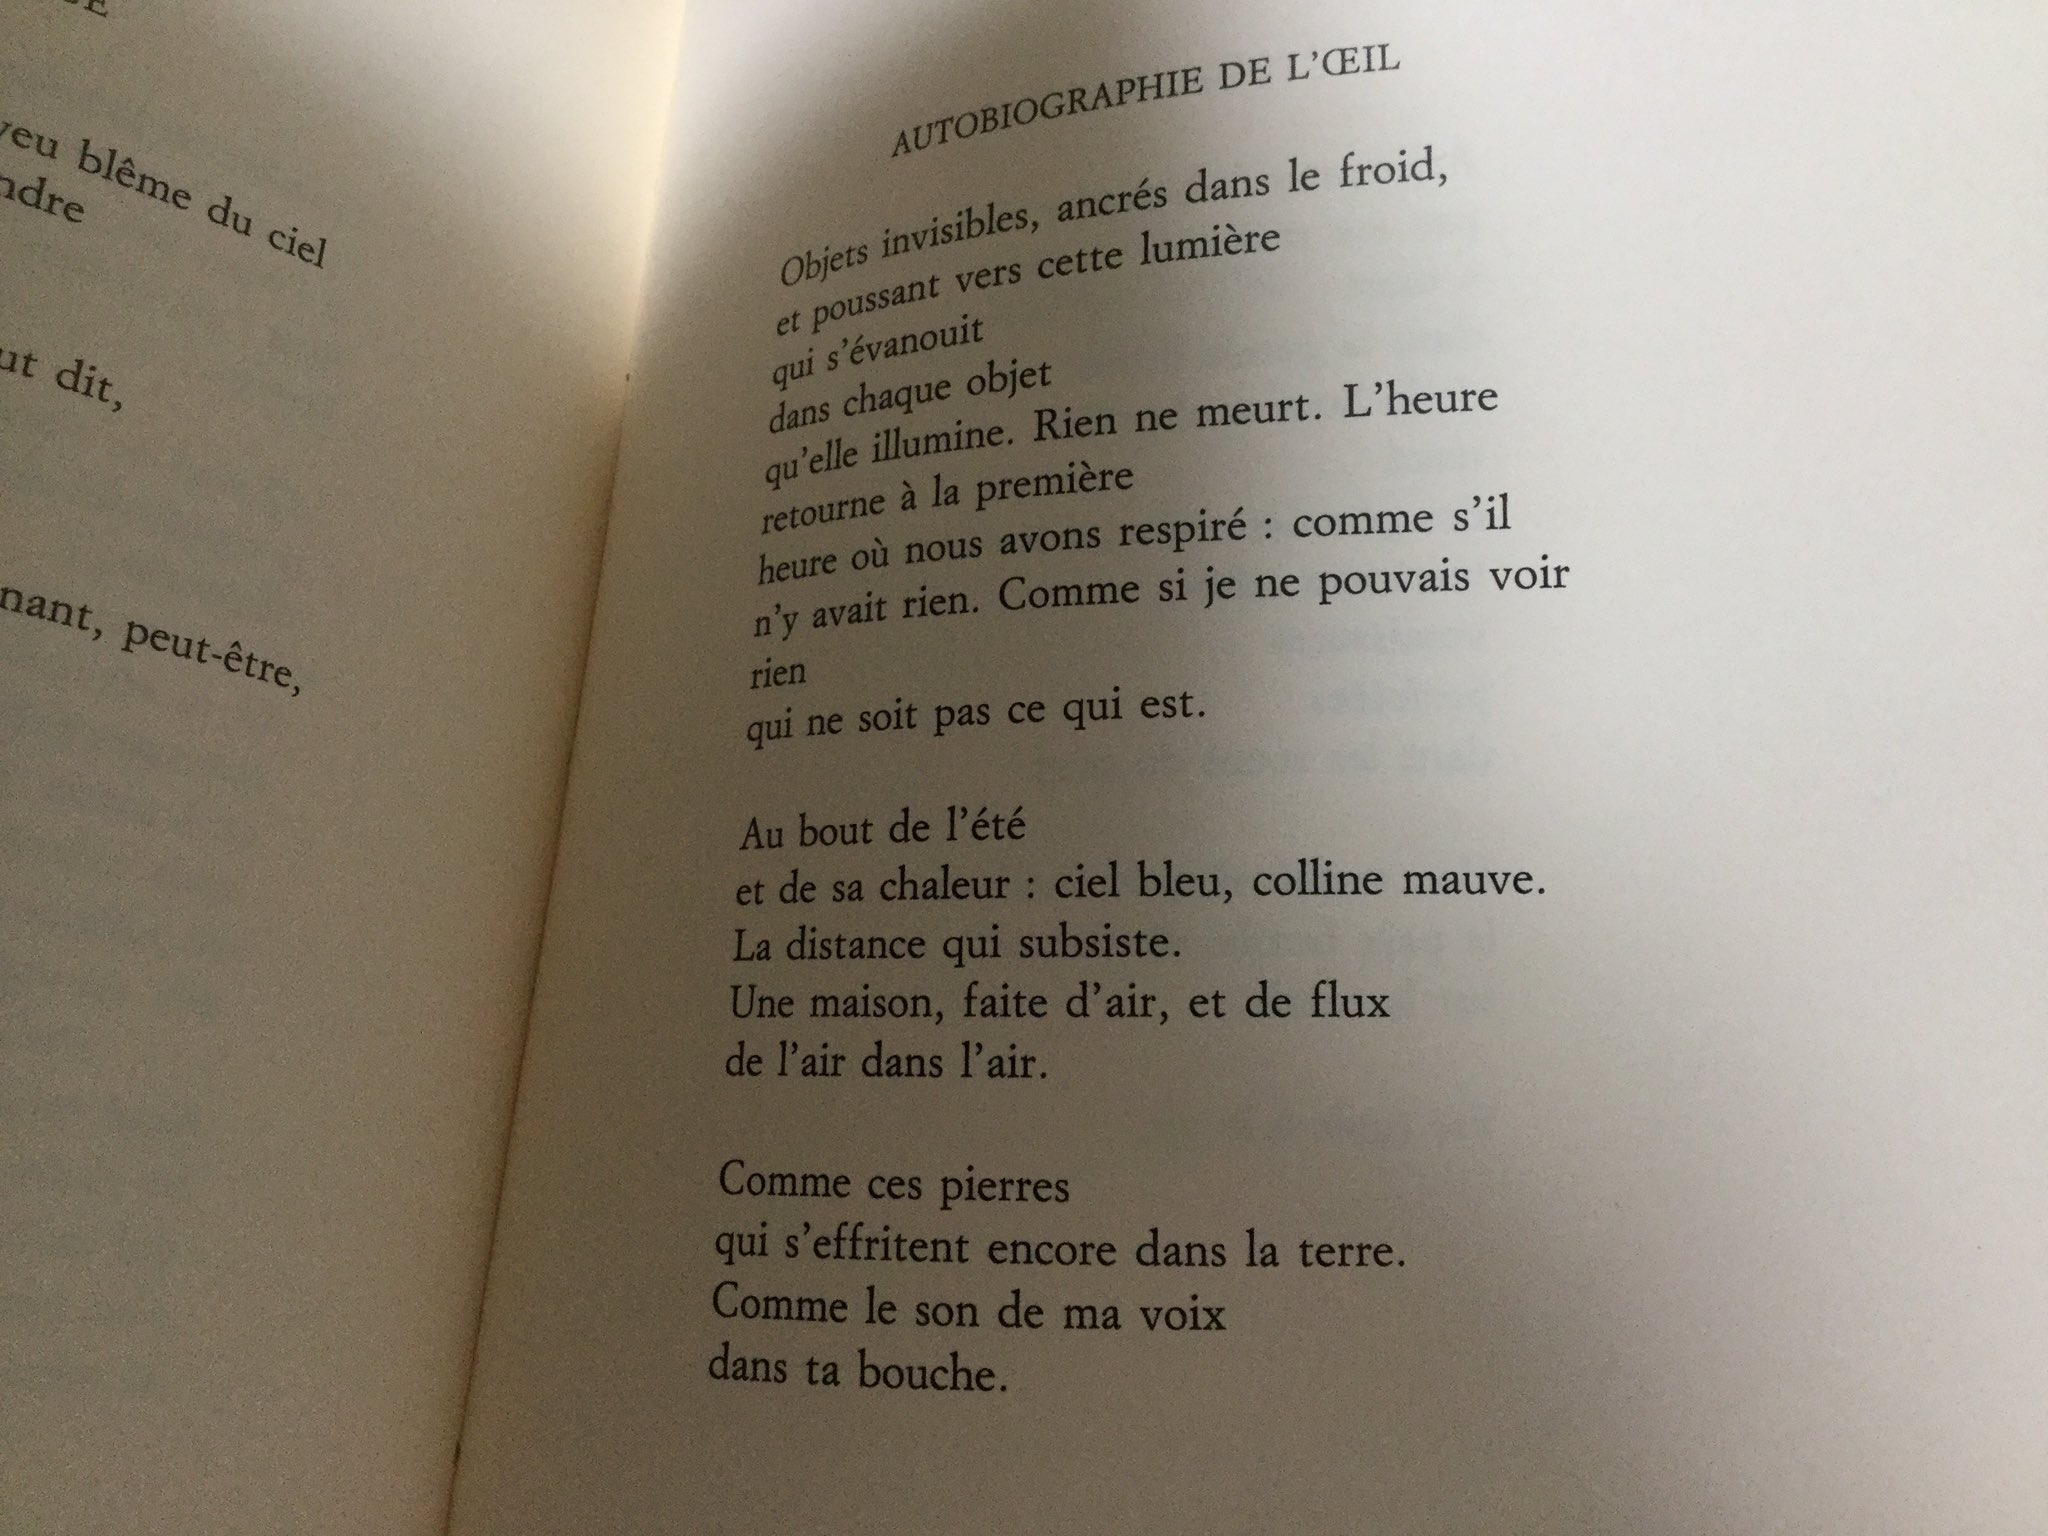 Intermezzo ポール オースター の詩集のフランス語版を取り寄せる オースター はフランス に留学し詩人たちとも交流した このフランス語訳はもともとこの言語で書かれたかのように詩風と言語が馴染んでいてすごく魅力がある 英語版も探して見比べてみよう